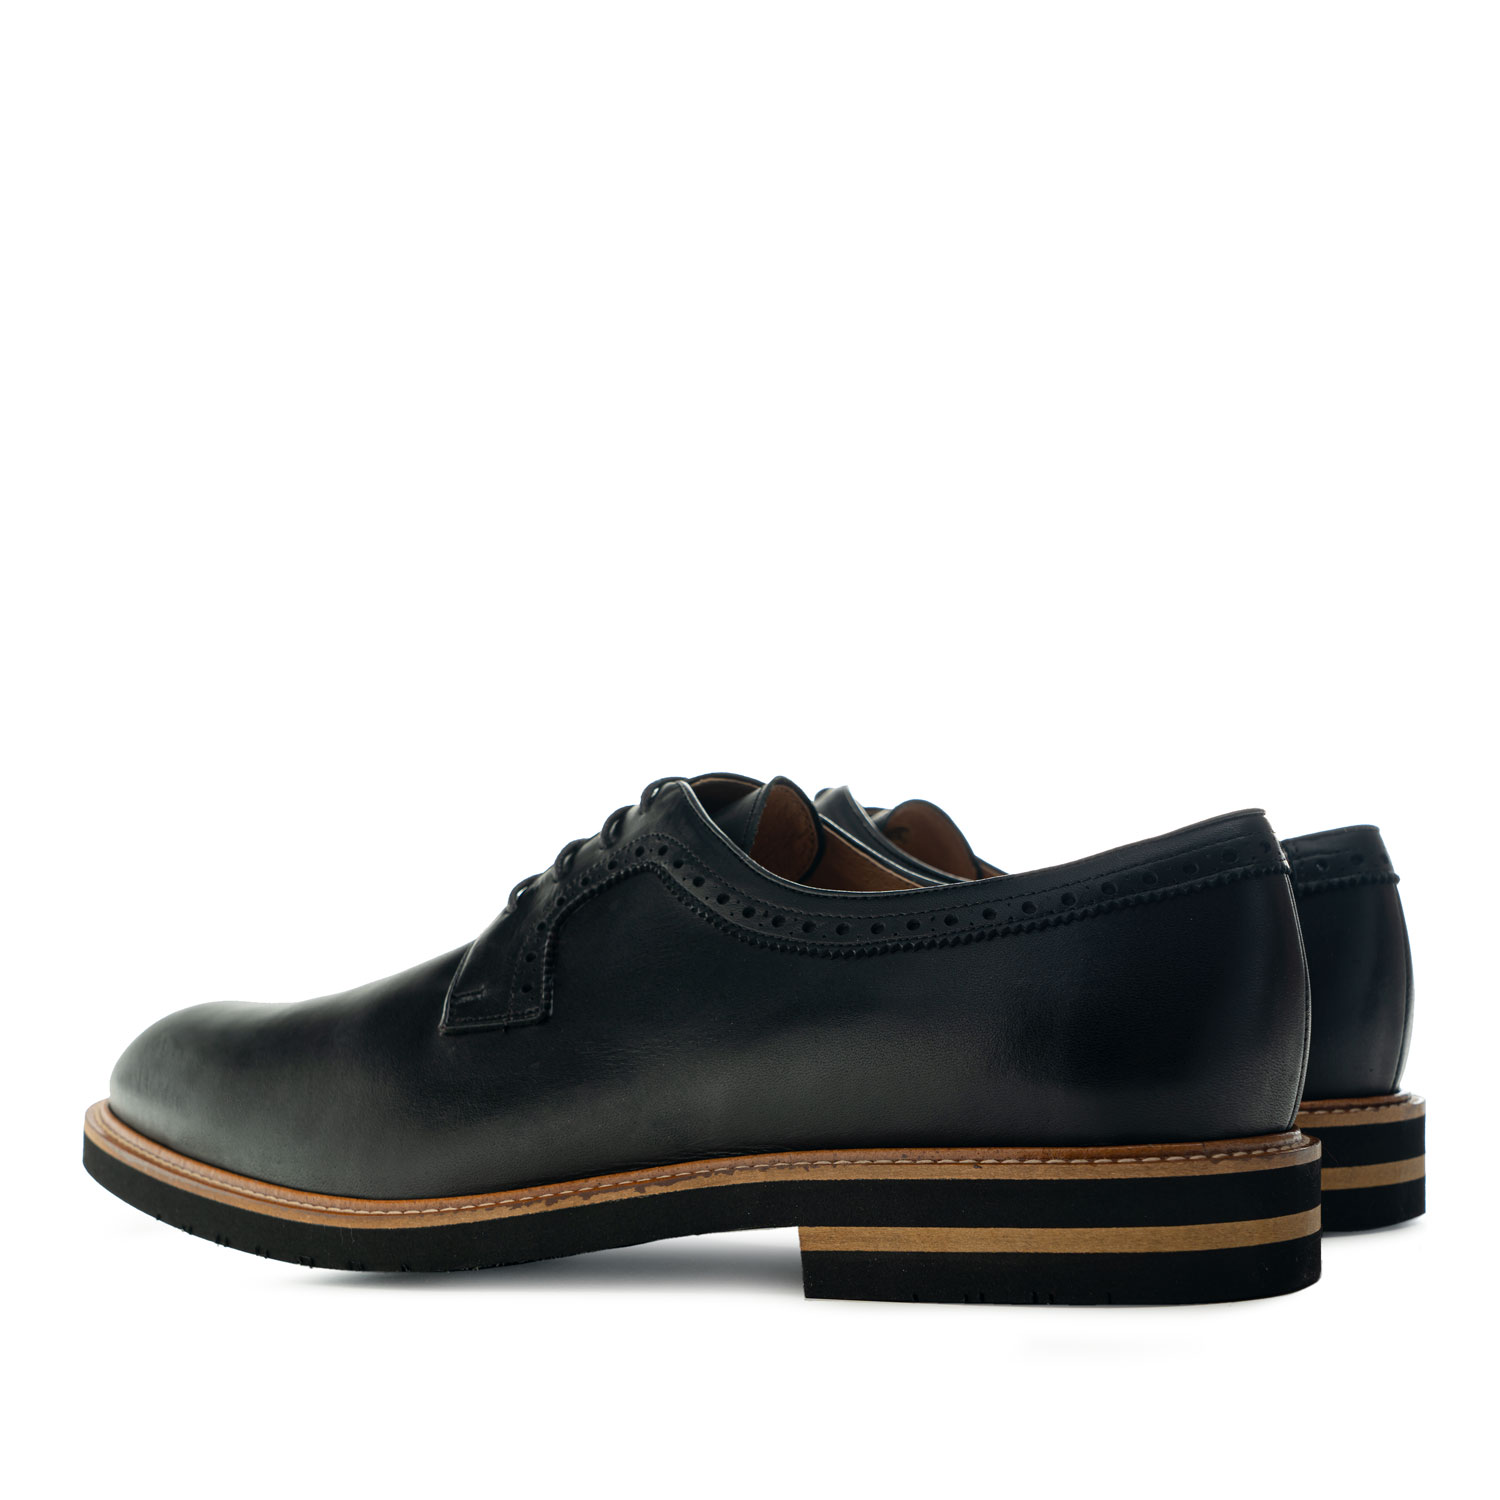 Chaussures pour Hommes style Oxford en cuir Noir 